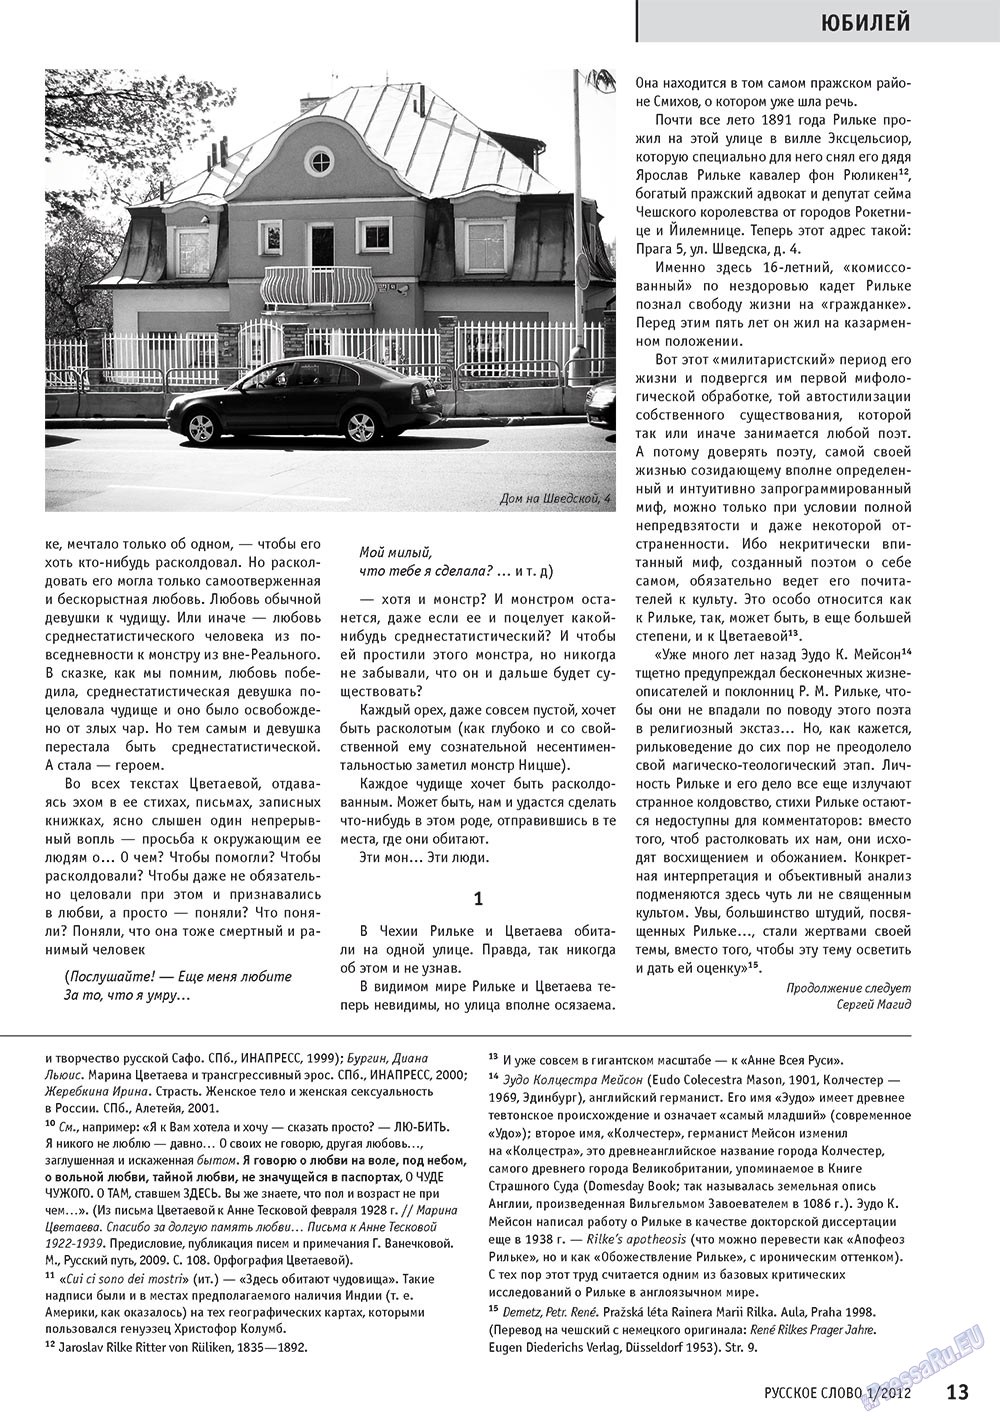 Русское слово, журнал. 2012 №1 стр.15